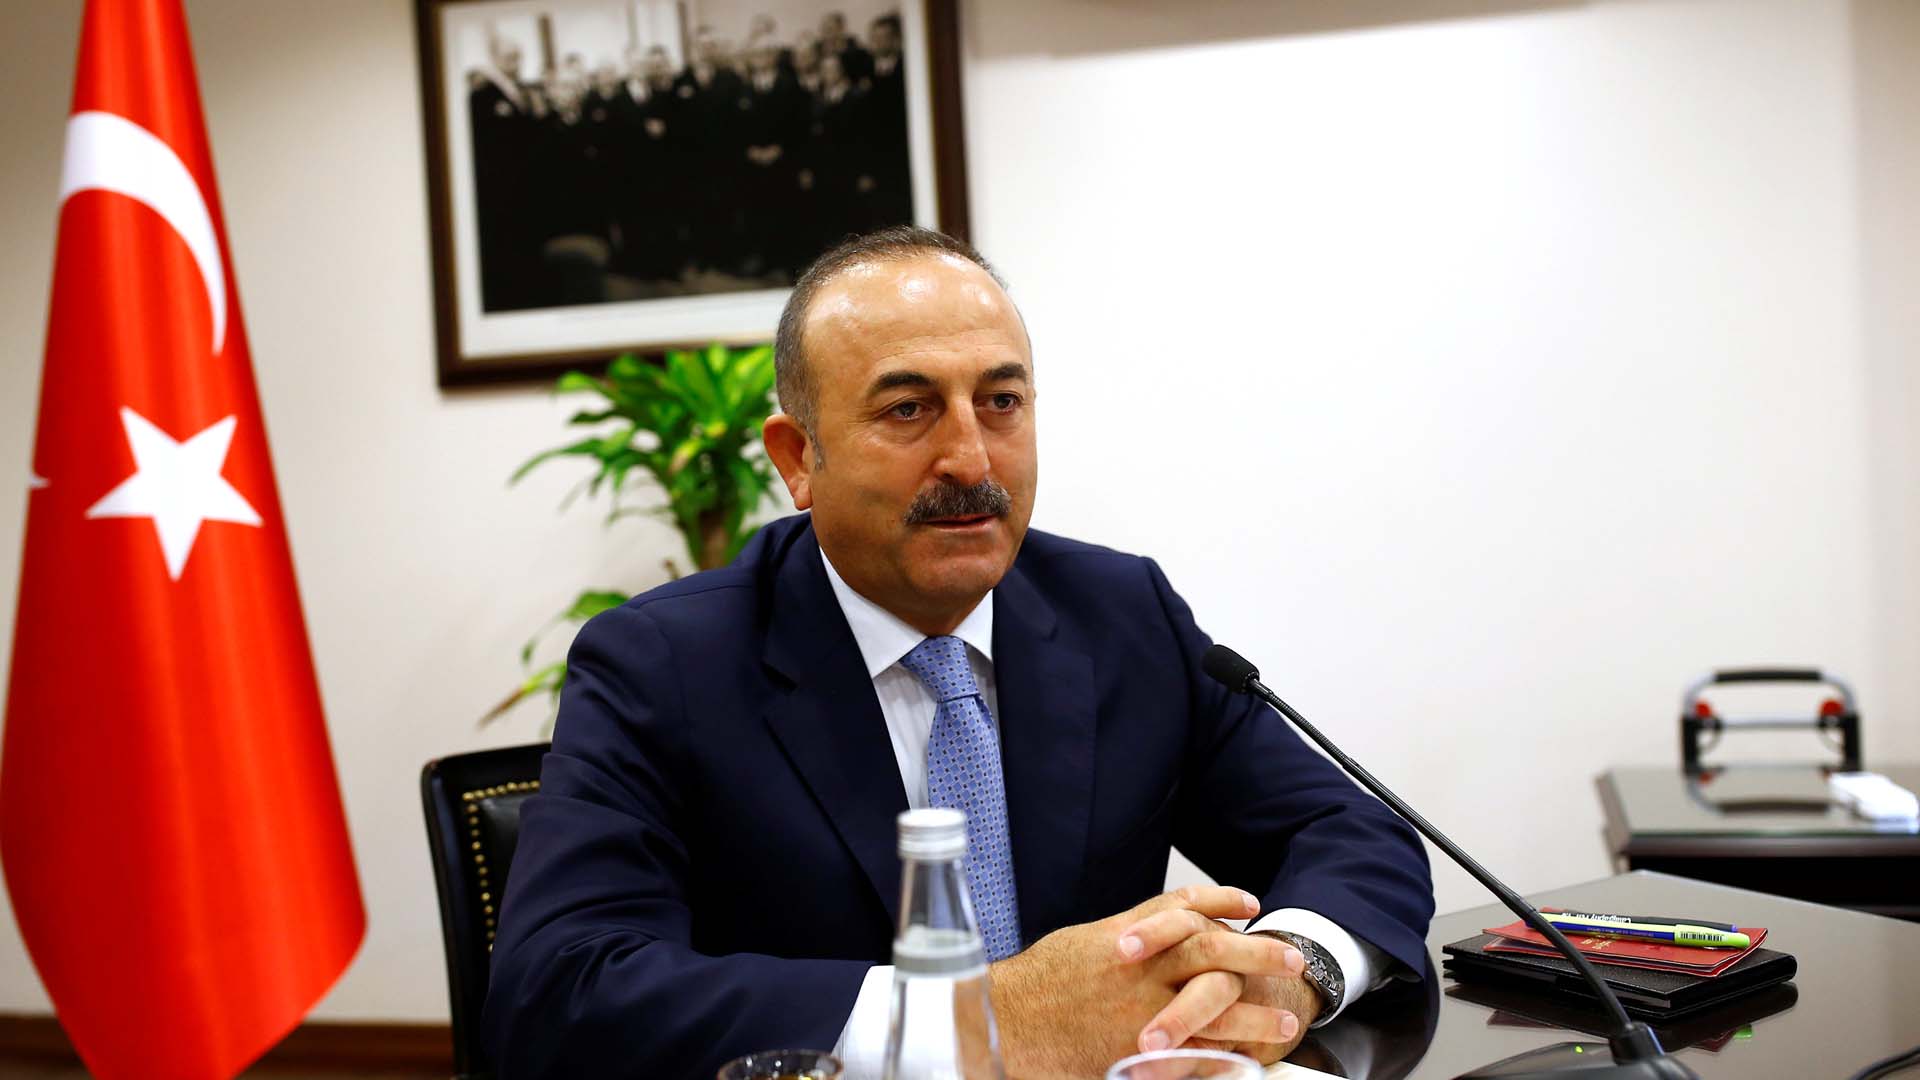 El ministro turco de Relaciones Exteriores, Mevlüt Cavusoglu indico que el motivo de la detención de debe a complicidad tras el golpe de estado